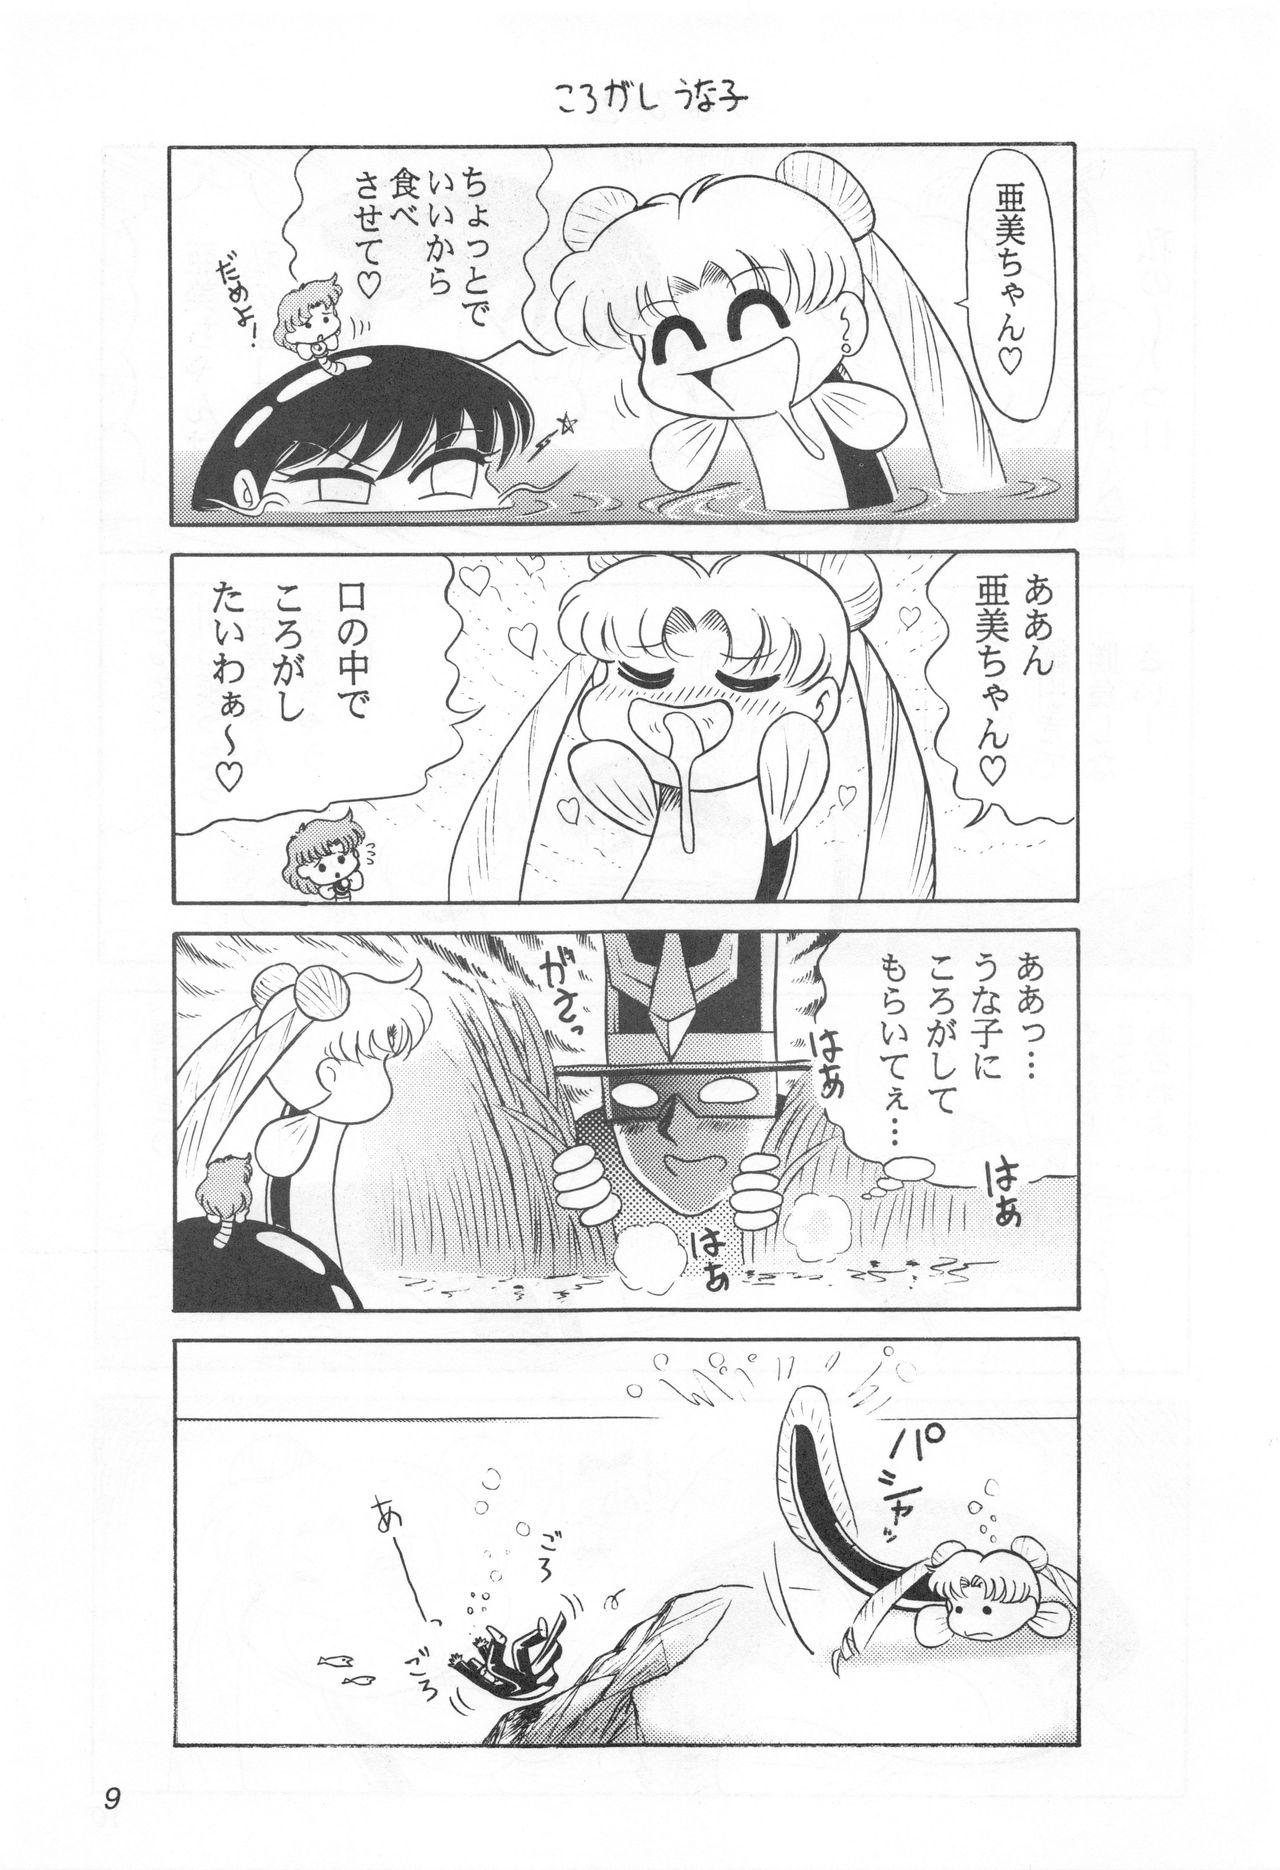 Comedor Mimizu no Ami-chan Vol. 2 - Sailor moon Horny - Page 8